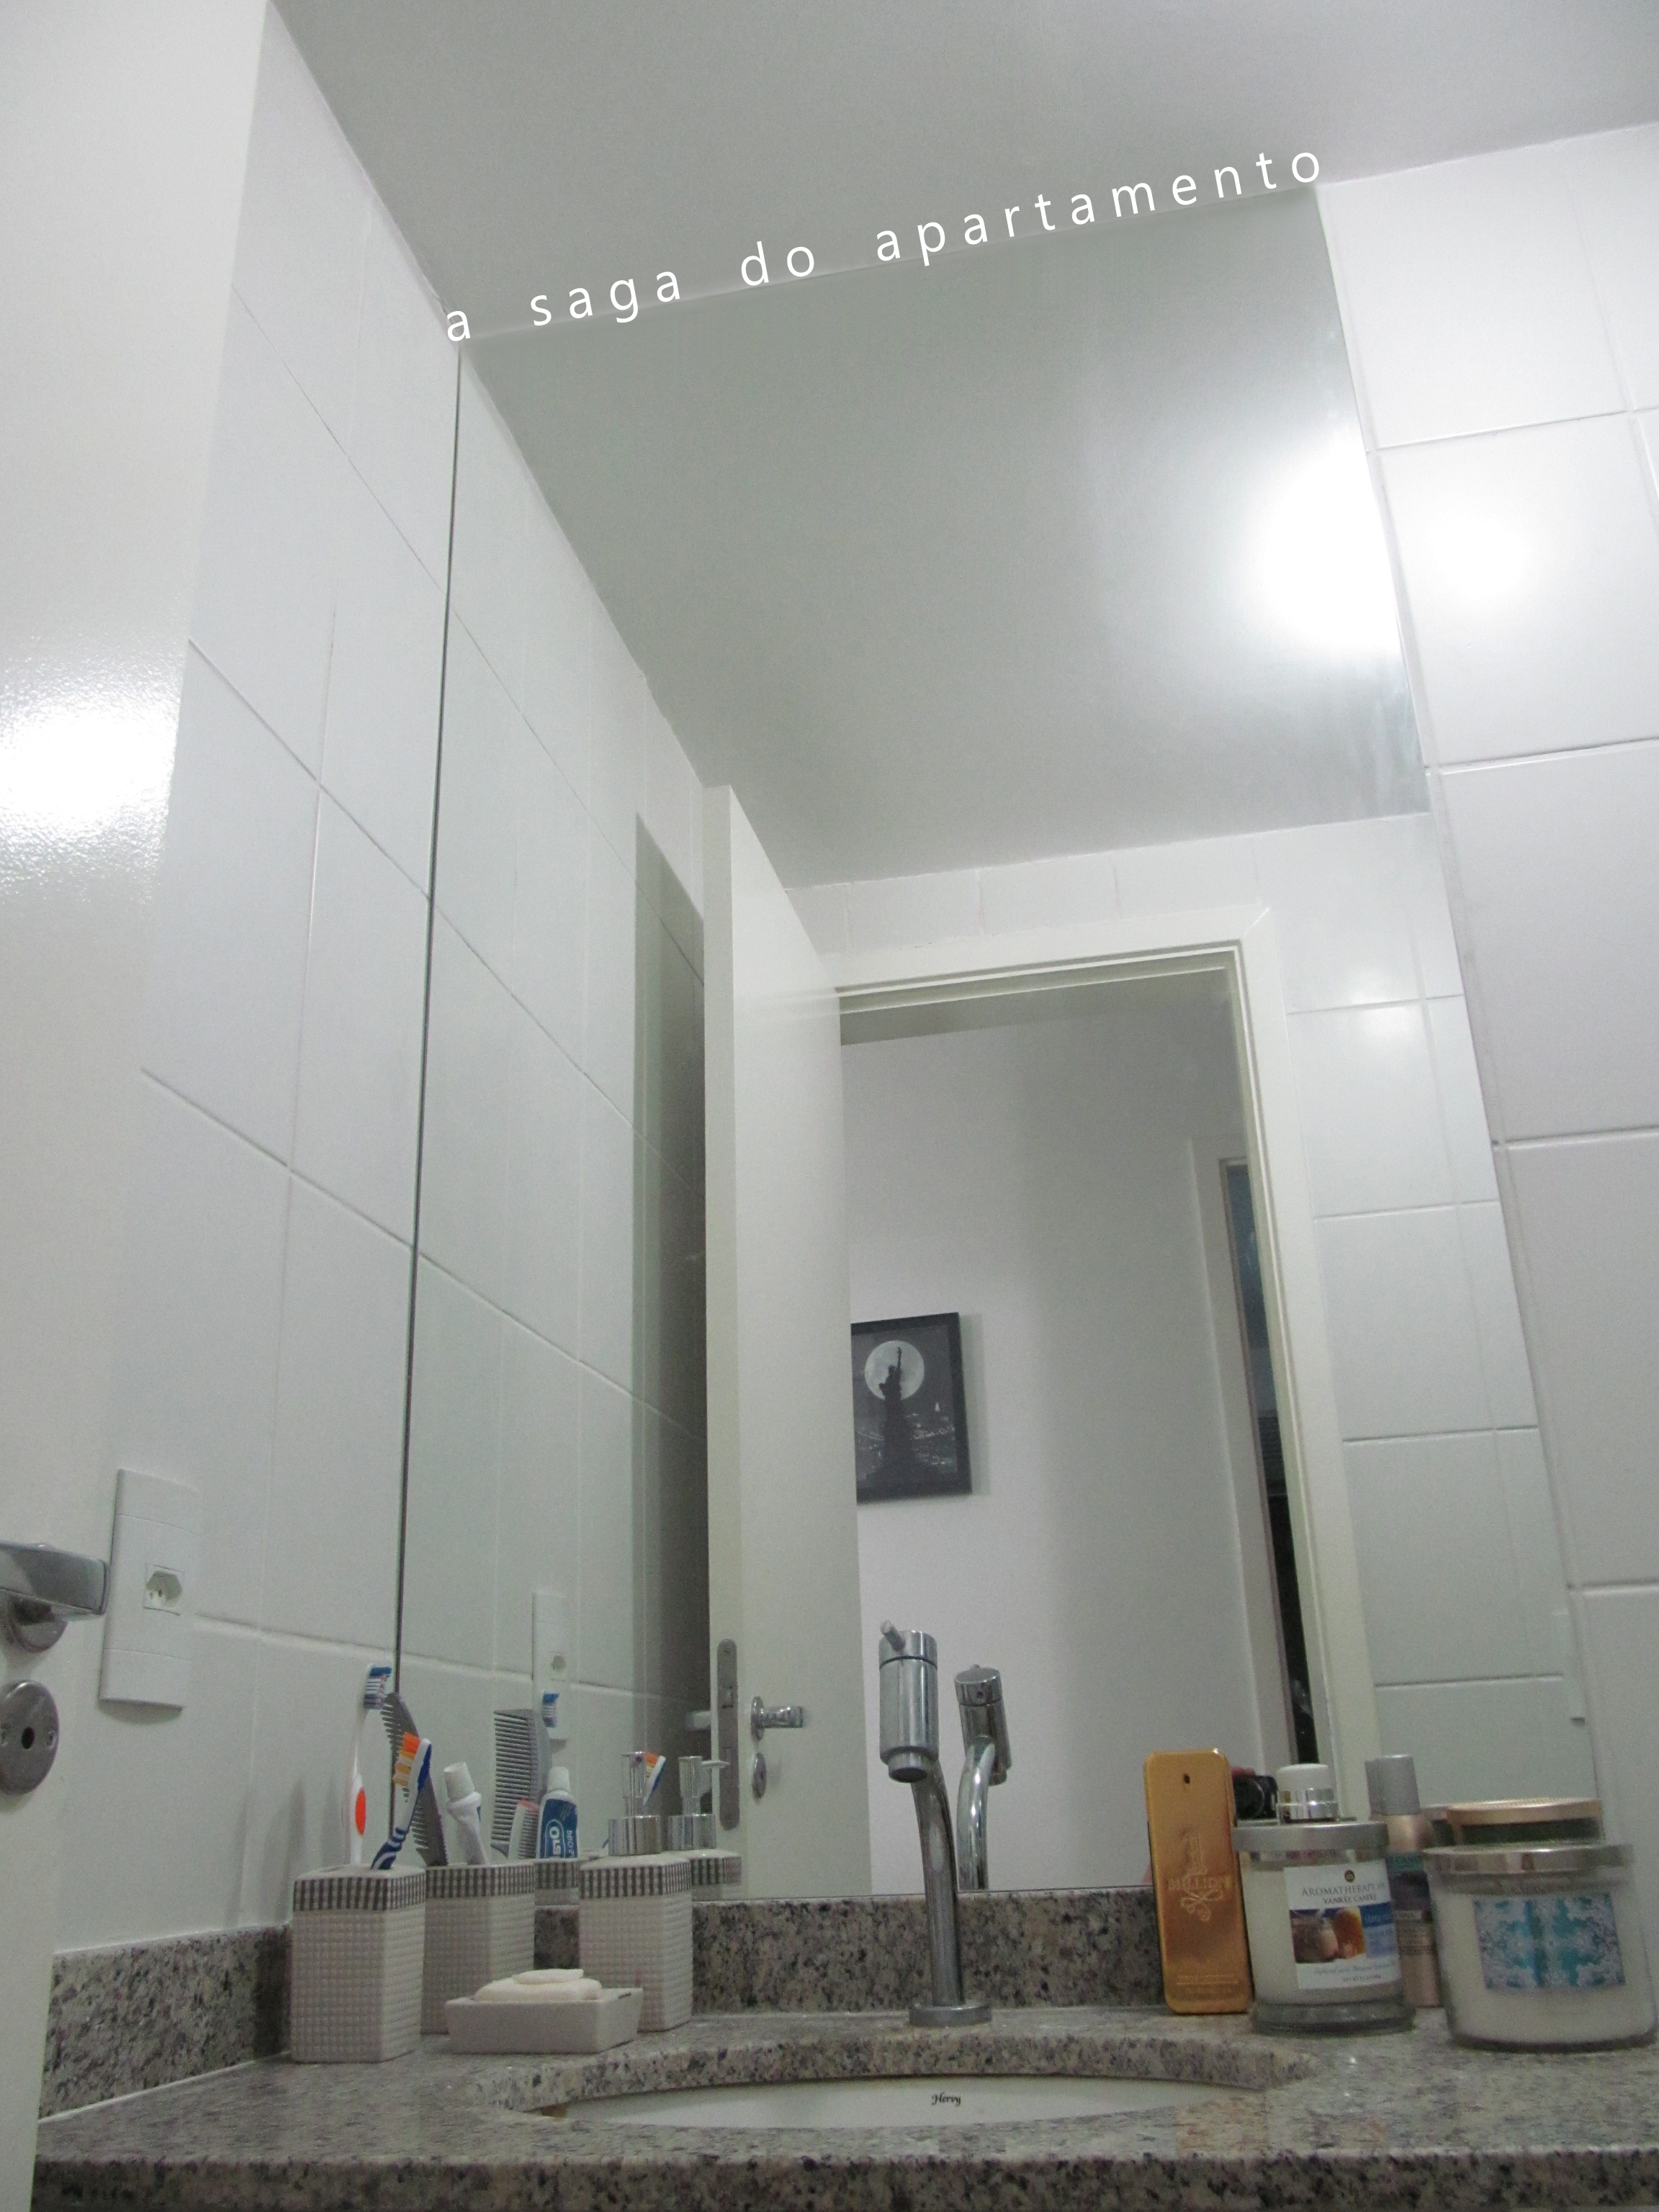 Decorando o Banheiro: Quadros, Espelho e Metais  a saga do 